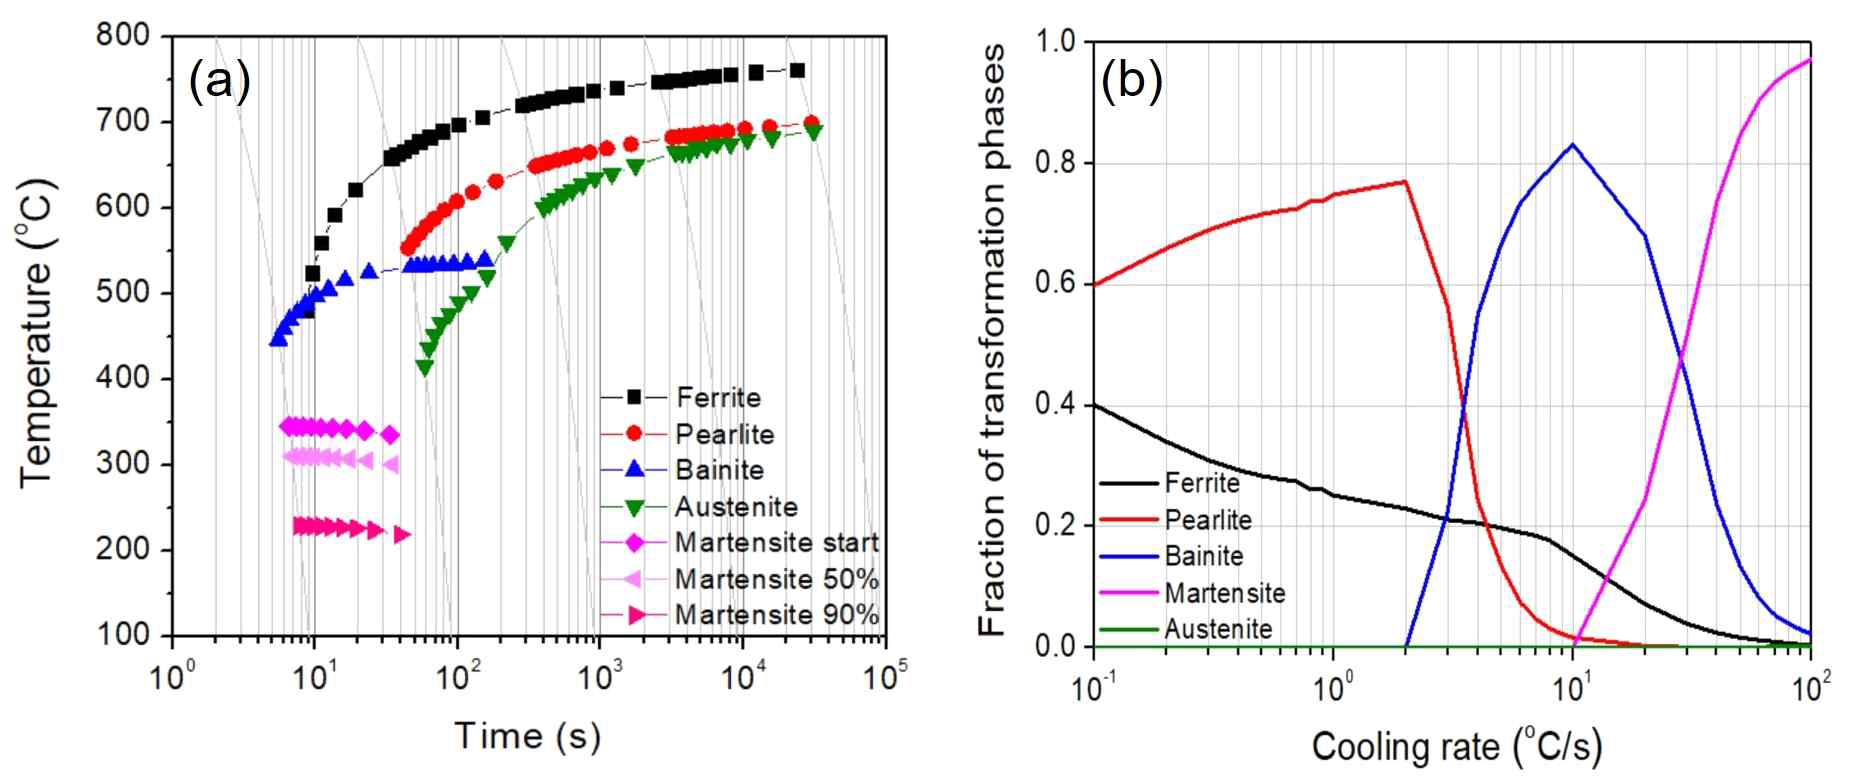 SD600 소재의 JMatPro로 계산한 (a) 연속냉각곡선 (CCT) 결과 및 (b) 냉각속도에 따른 상분율의 변화